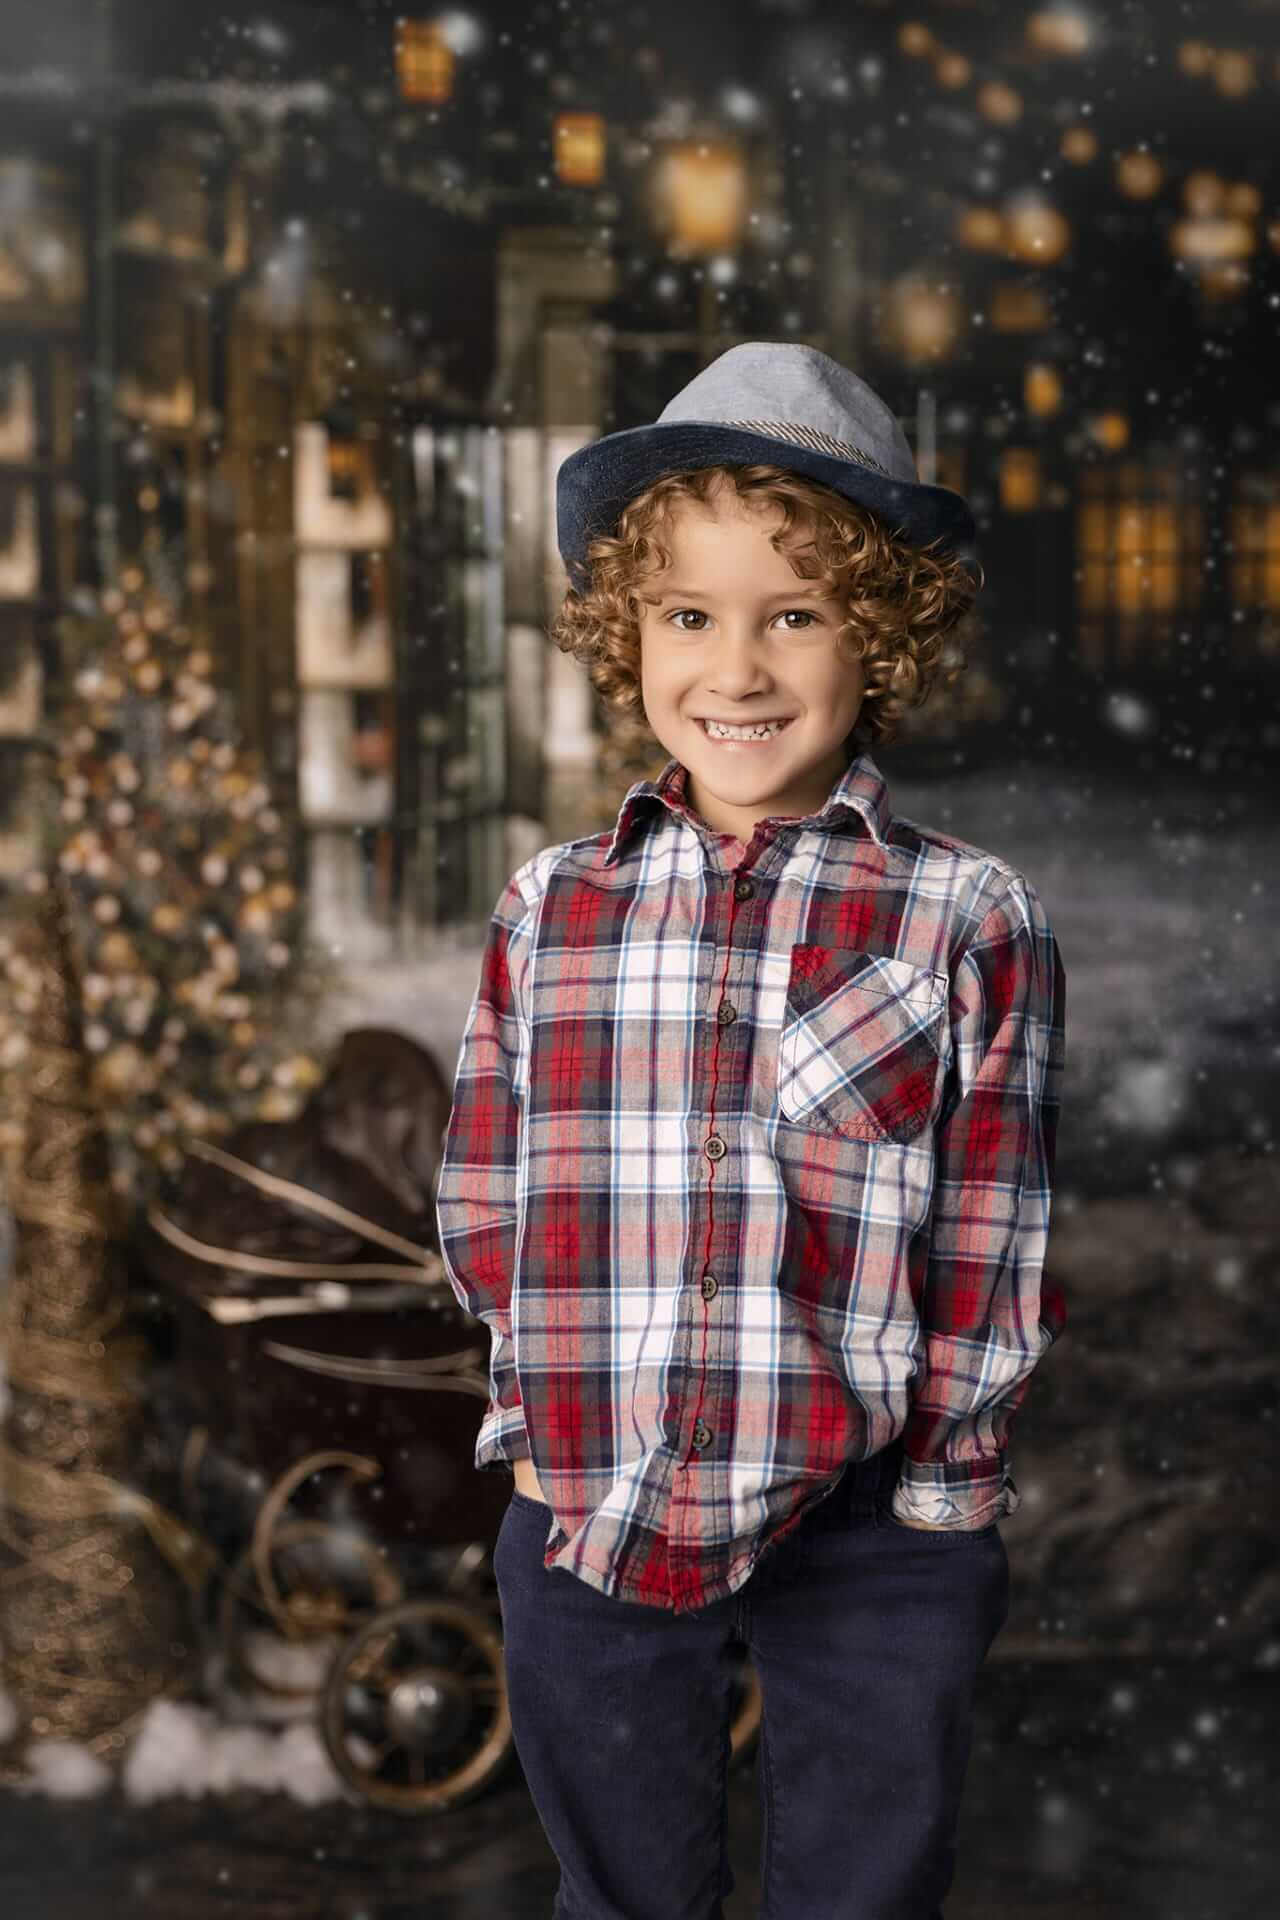 Un jeune garçon portant une chemise à carreaux et un chapeau devant un sapin de Noël.